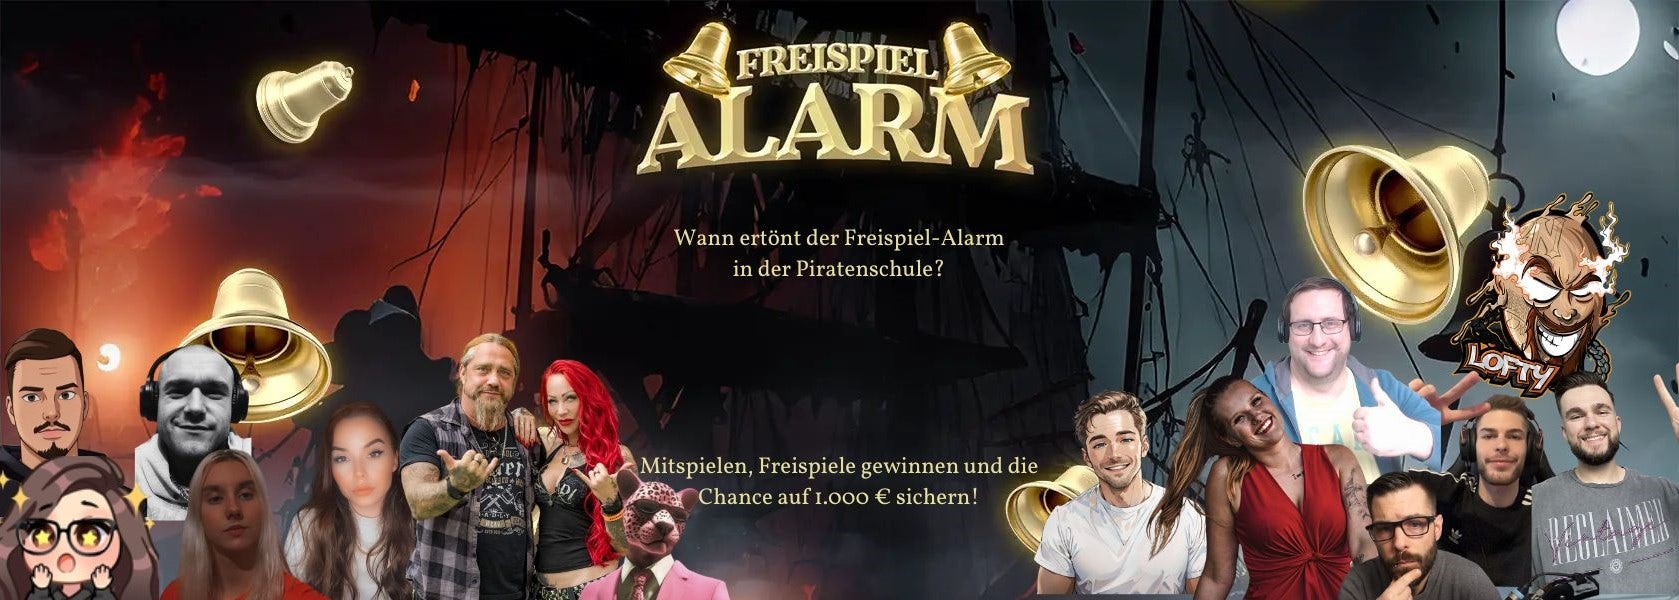 freispiel-alarm-piraten-schule-17042024